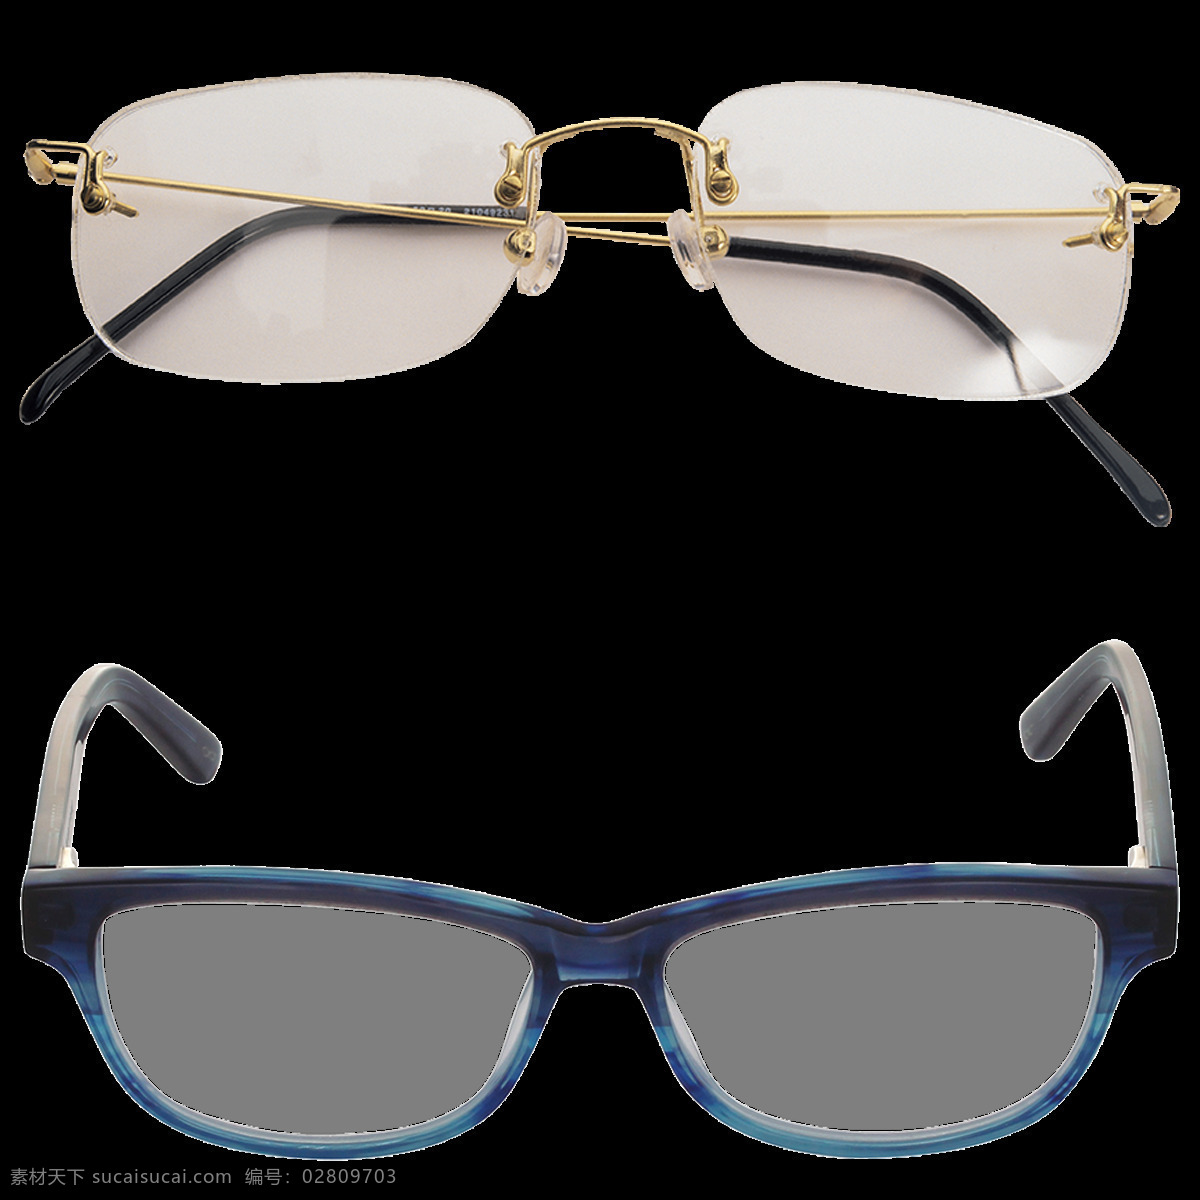 两 种 眼镜 免 抠 透明 图 层 卡通眼镜图片 创意眼镜图片 眼镜图片大全 唯美 时尚 眼镜广告图片 墨镜图片 太阳镜图片 近视眼镜 眼镜海报 卡通眼镜 黑框眼镜